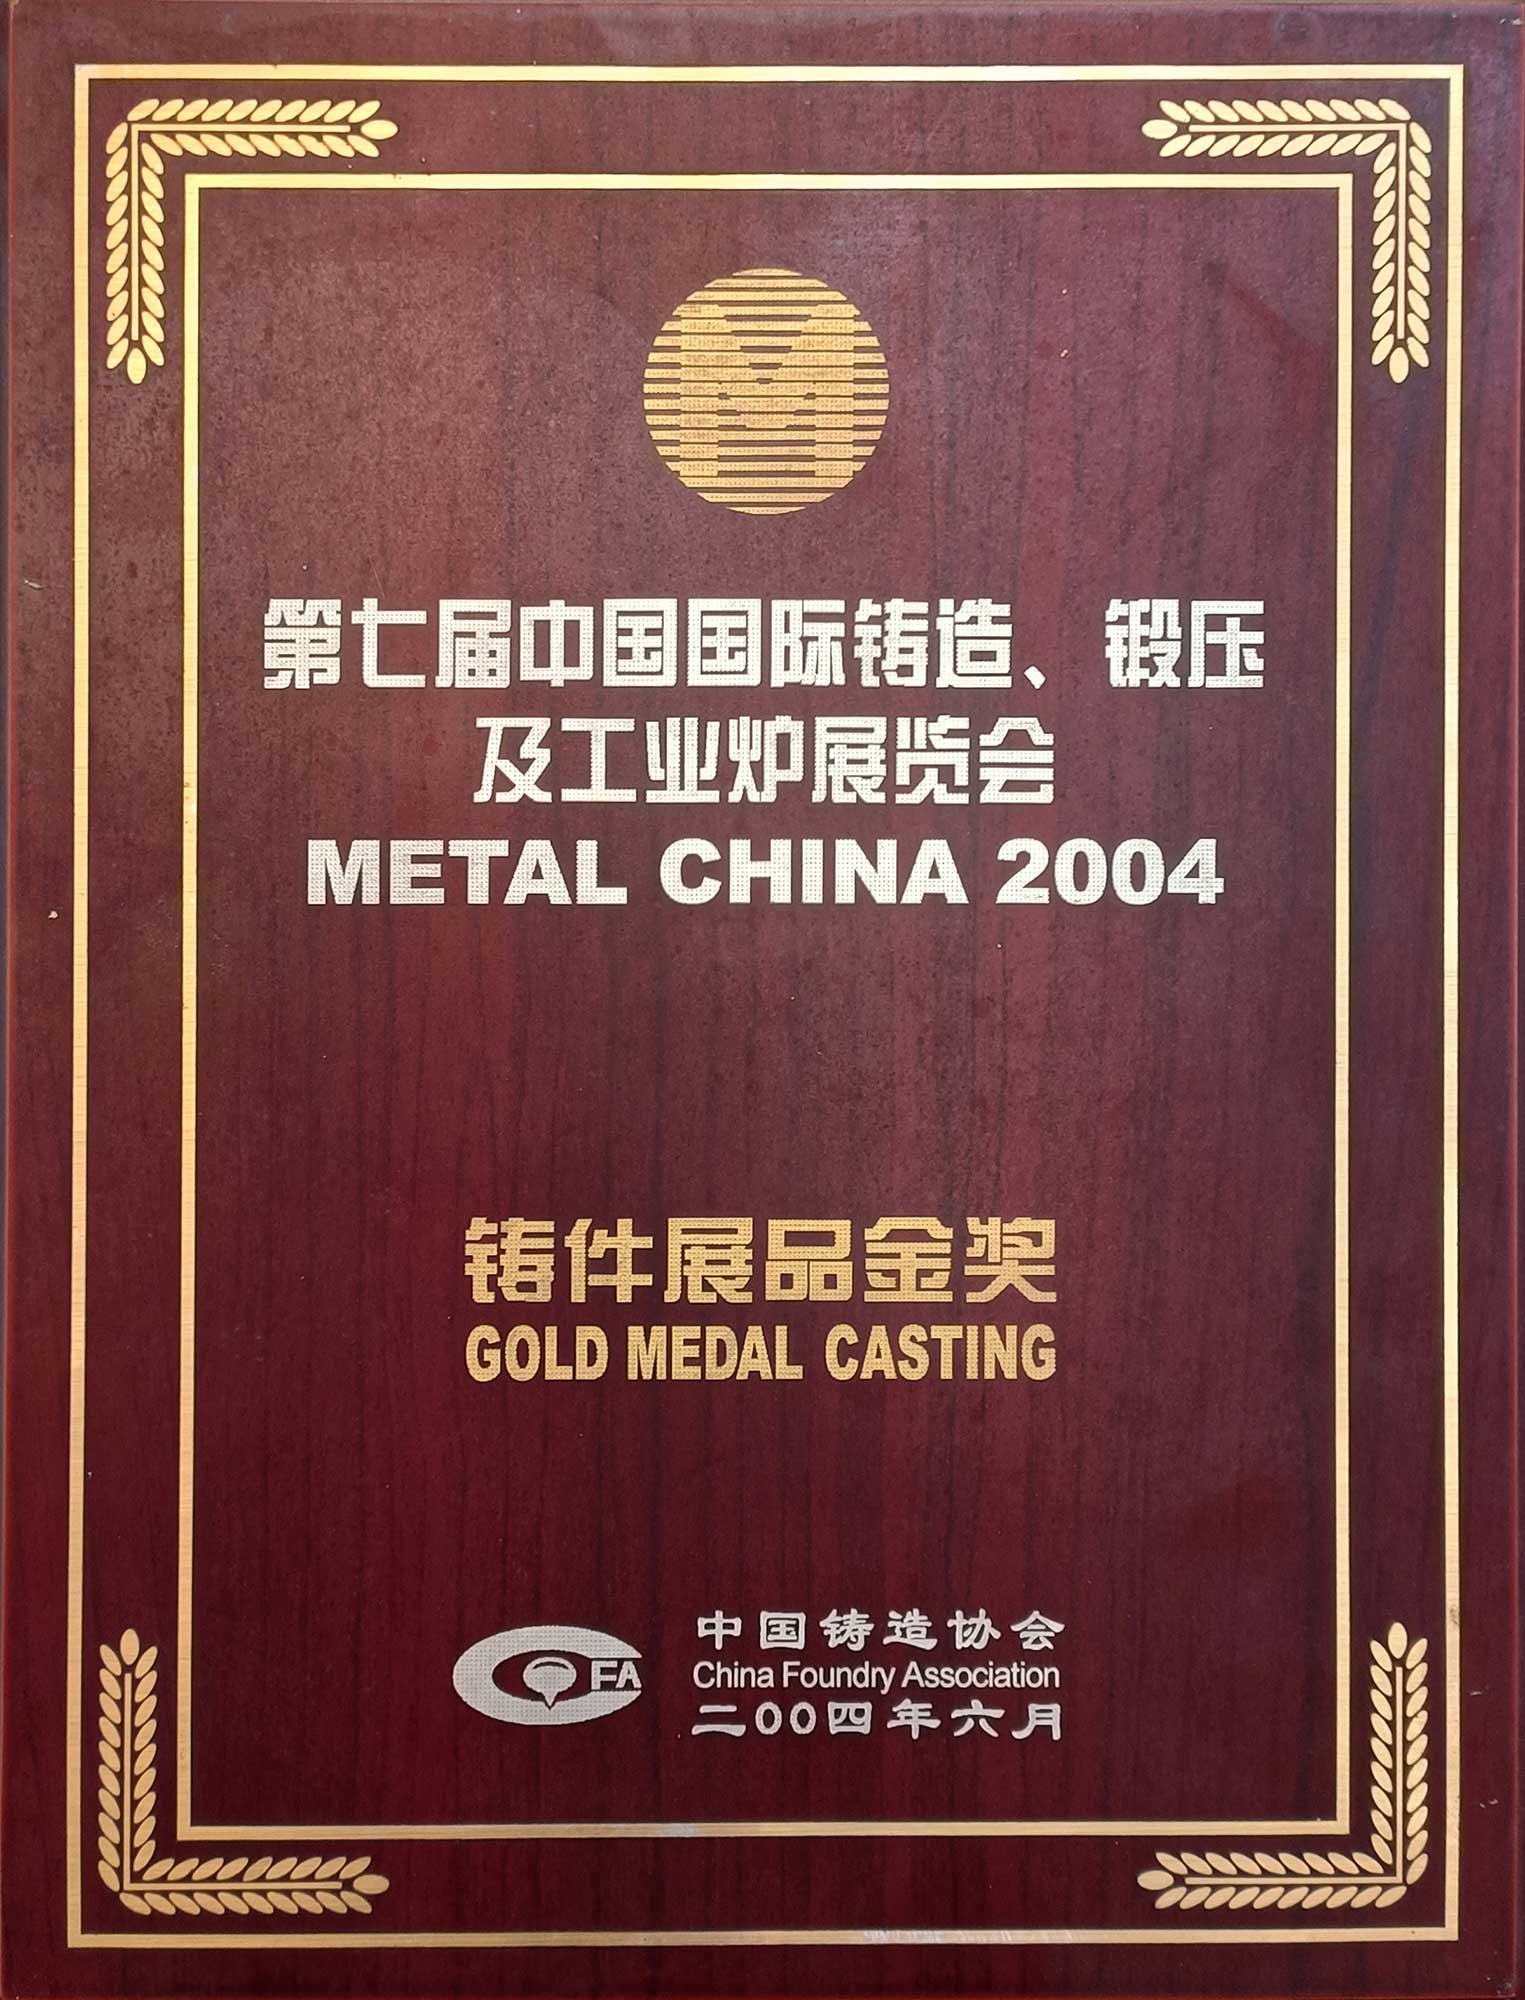 第七届中国国际铸造、锻压及工业炉展览会铸件展品金奖